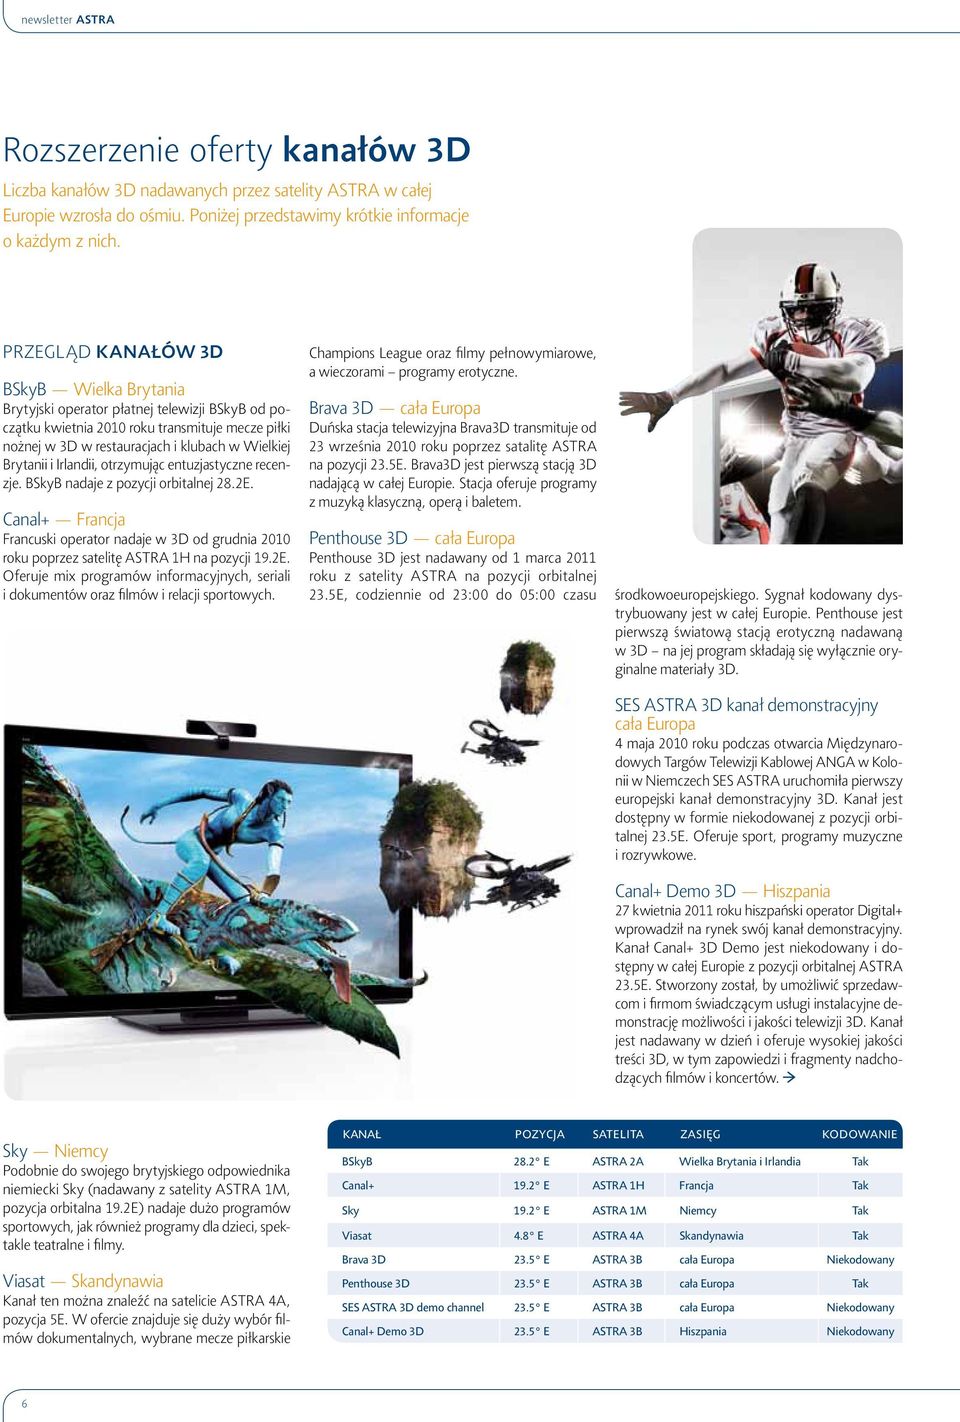 Irlandii, otrzymując entuzjastyczne recenzje. BSkyB nadaje z pozycji orbitalnej 28.2E. Canal+ Francja Francuski operator nadaje w 3D od grudnia 2010 roku poprzez satelitę ASTRA 1H na pozycji 19.2E. Oferuje mix programów informacyjnych, seriali i dokumentów oraz filmów i relacji sportowych.